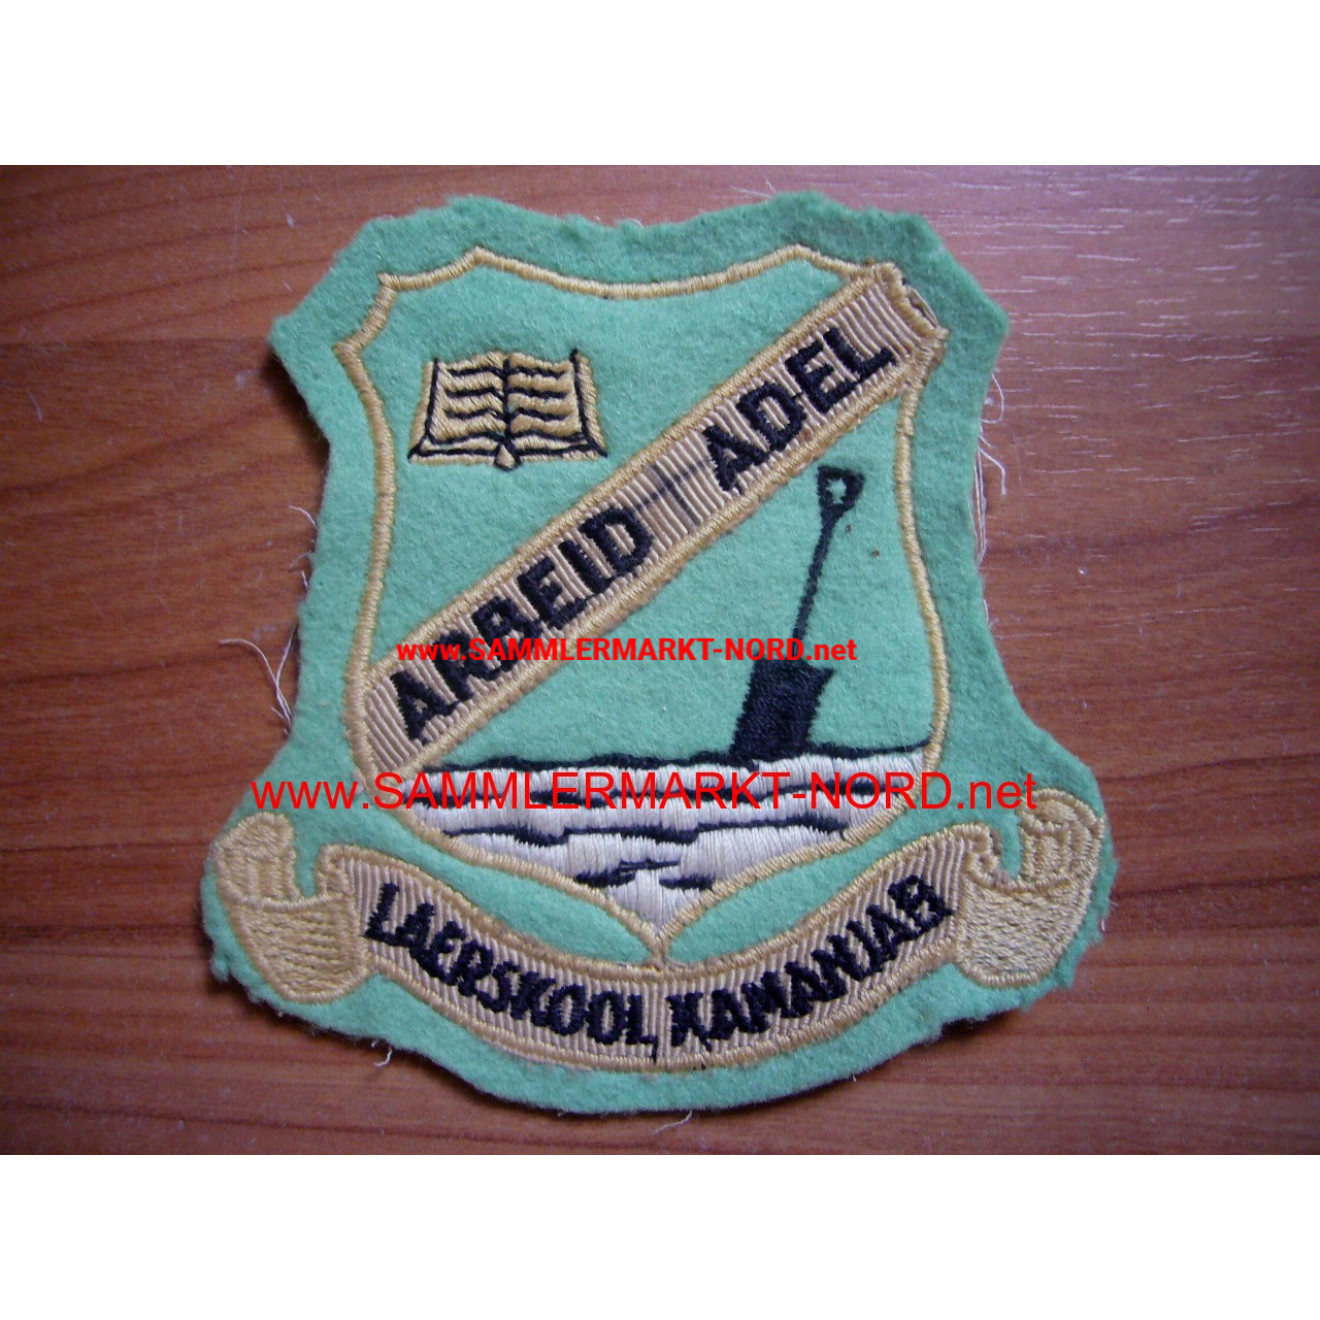 Namibia - Laerskool Kamanjab - uniform badge "Arbeid Adel"